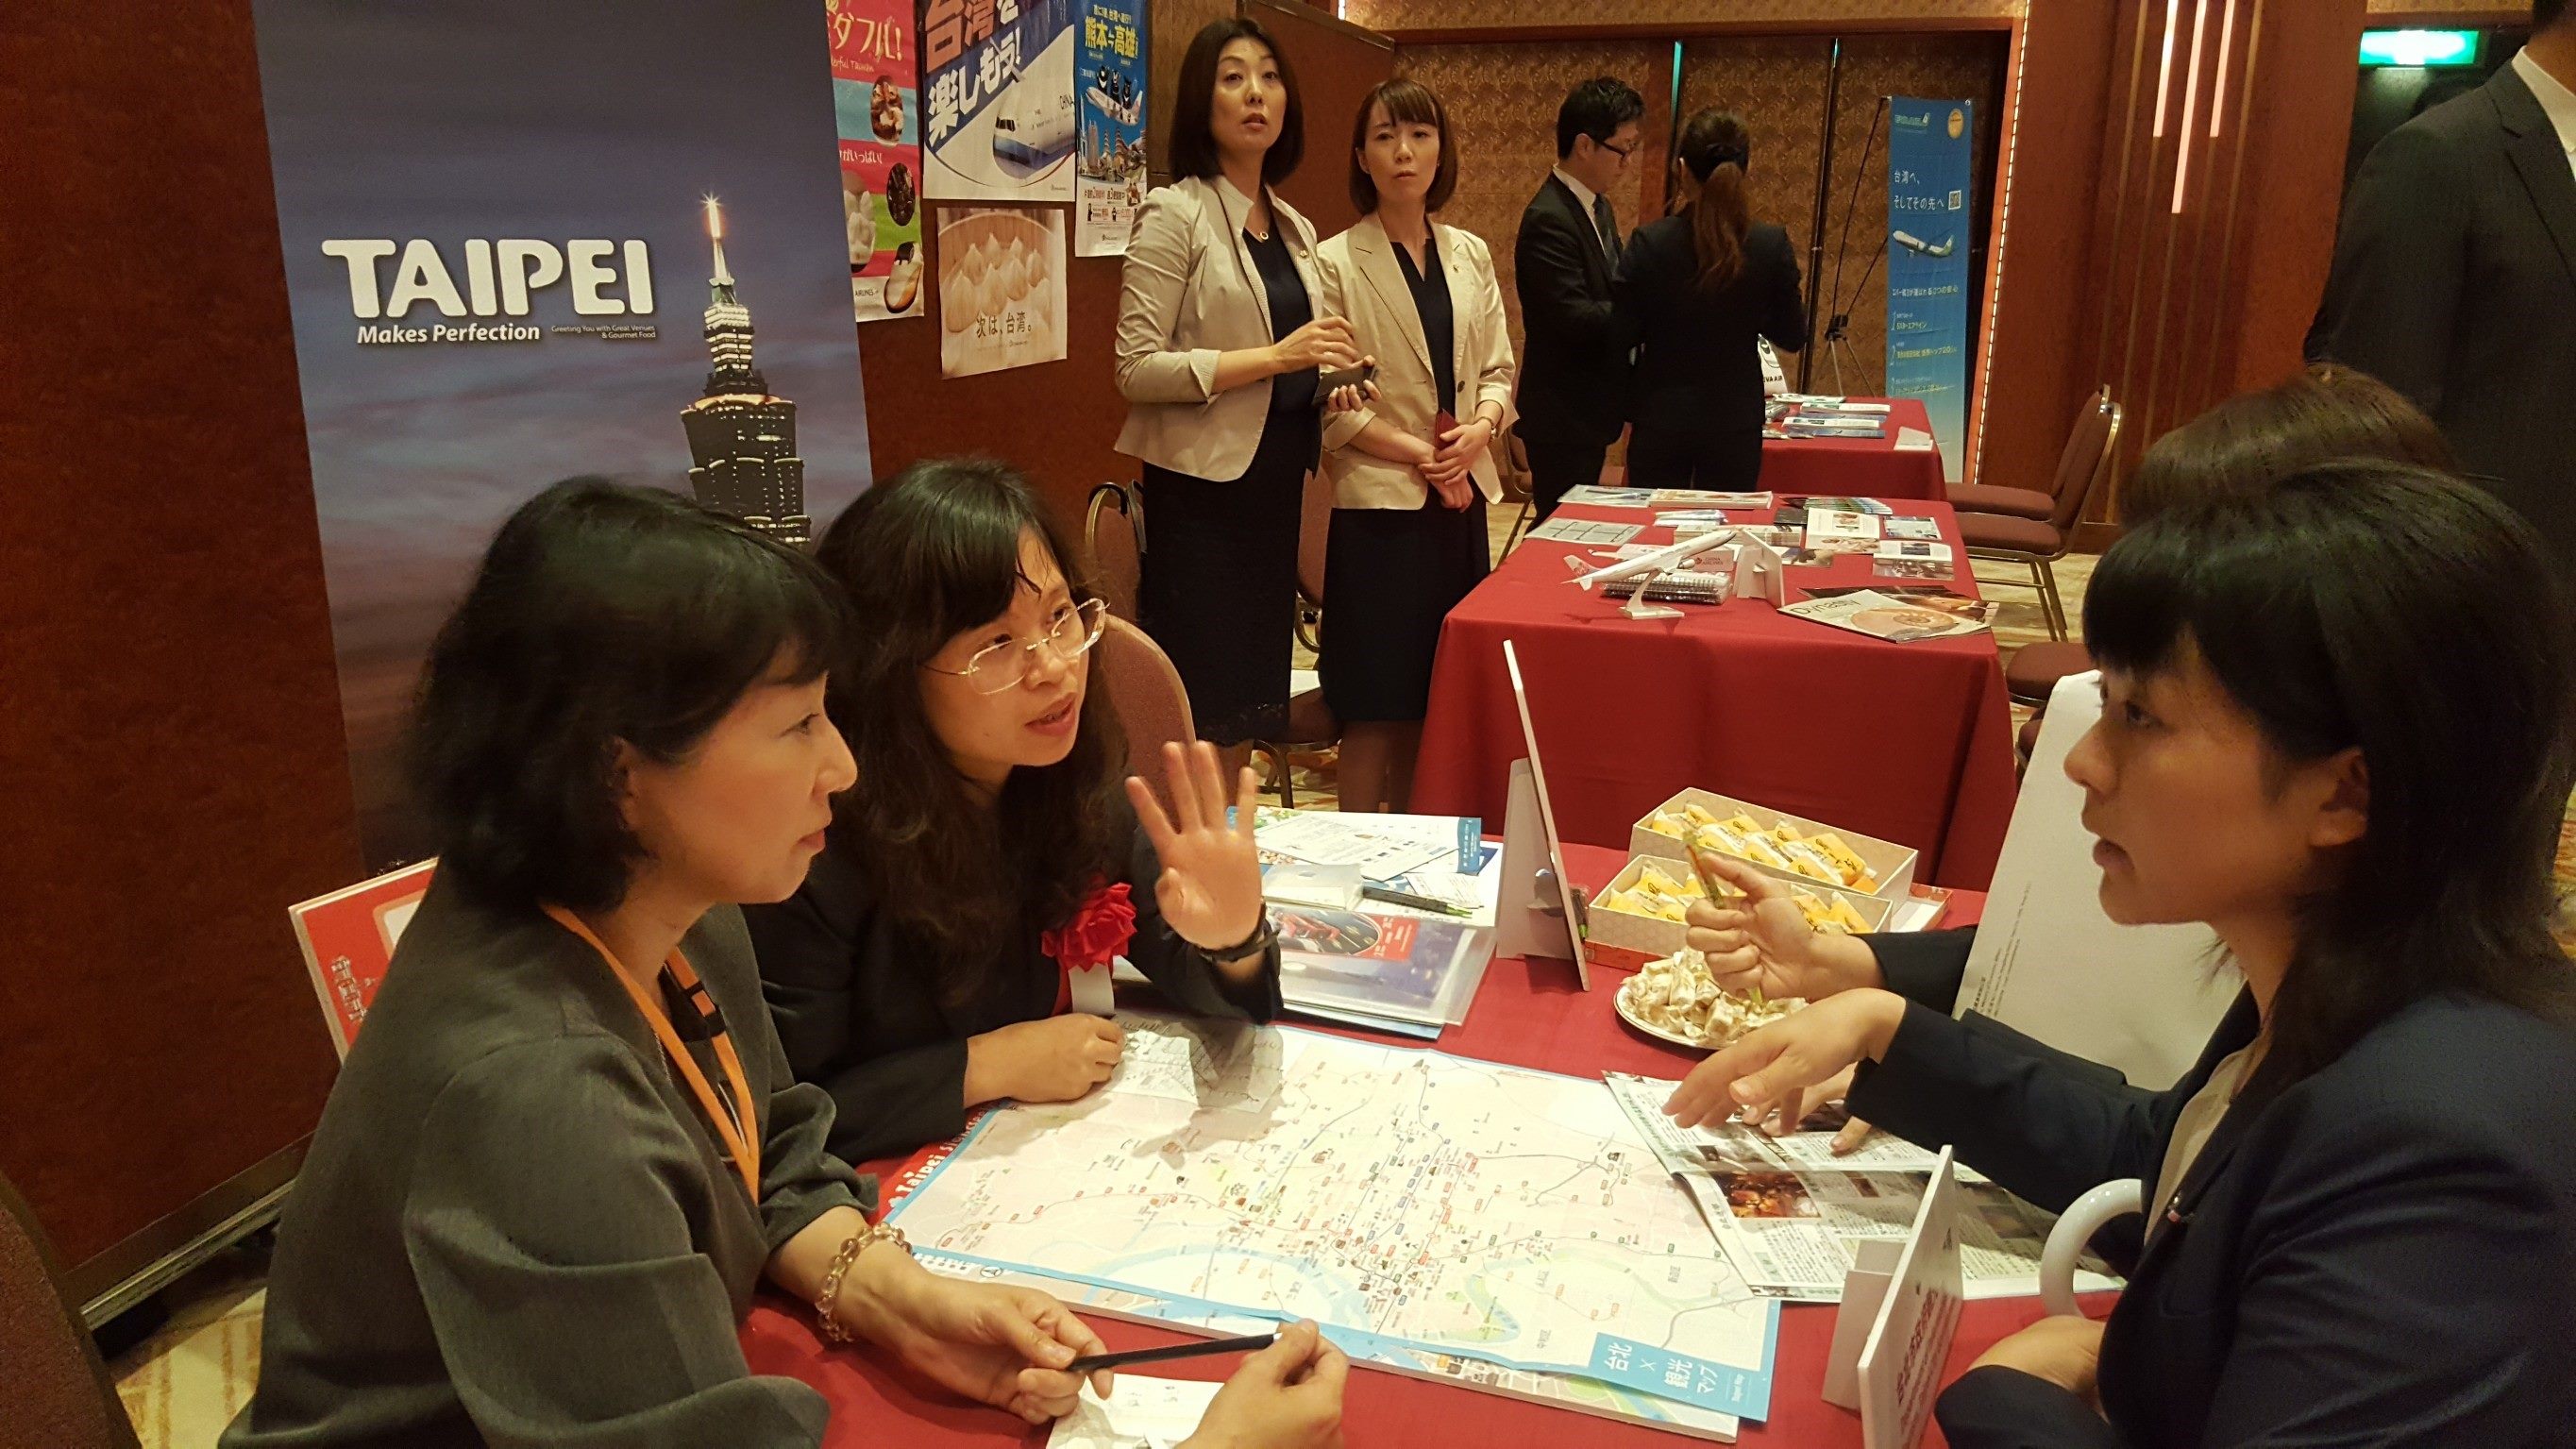 韓國、日本獎勵旅遊業者對於台北市會展暨獎勵旅遊補助及各式交通票券展現高關注度